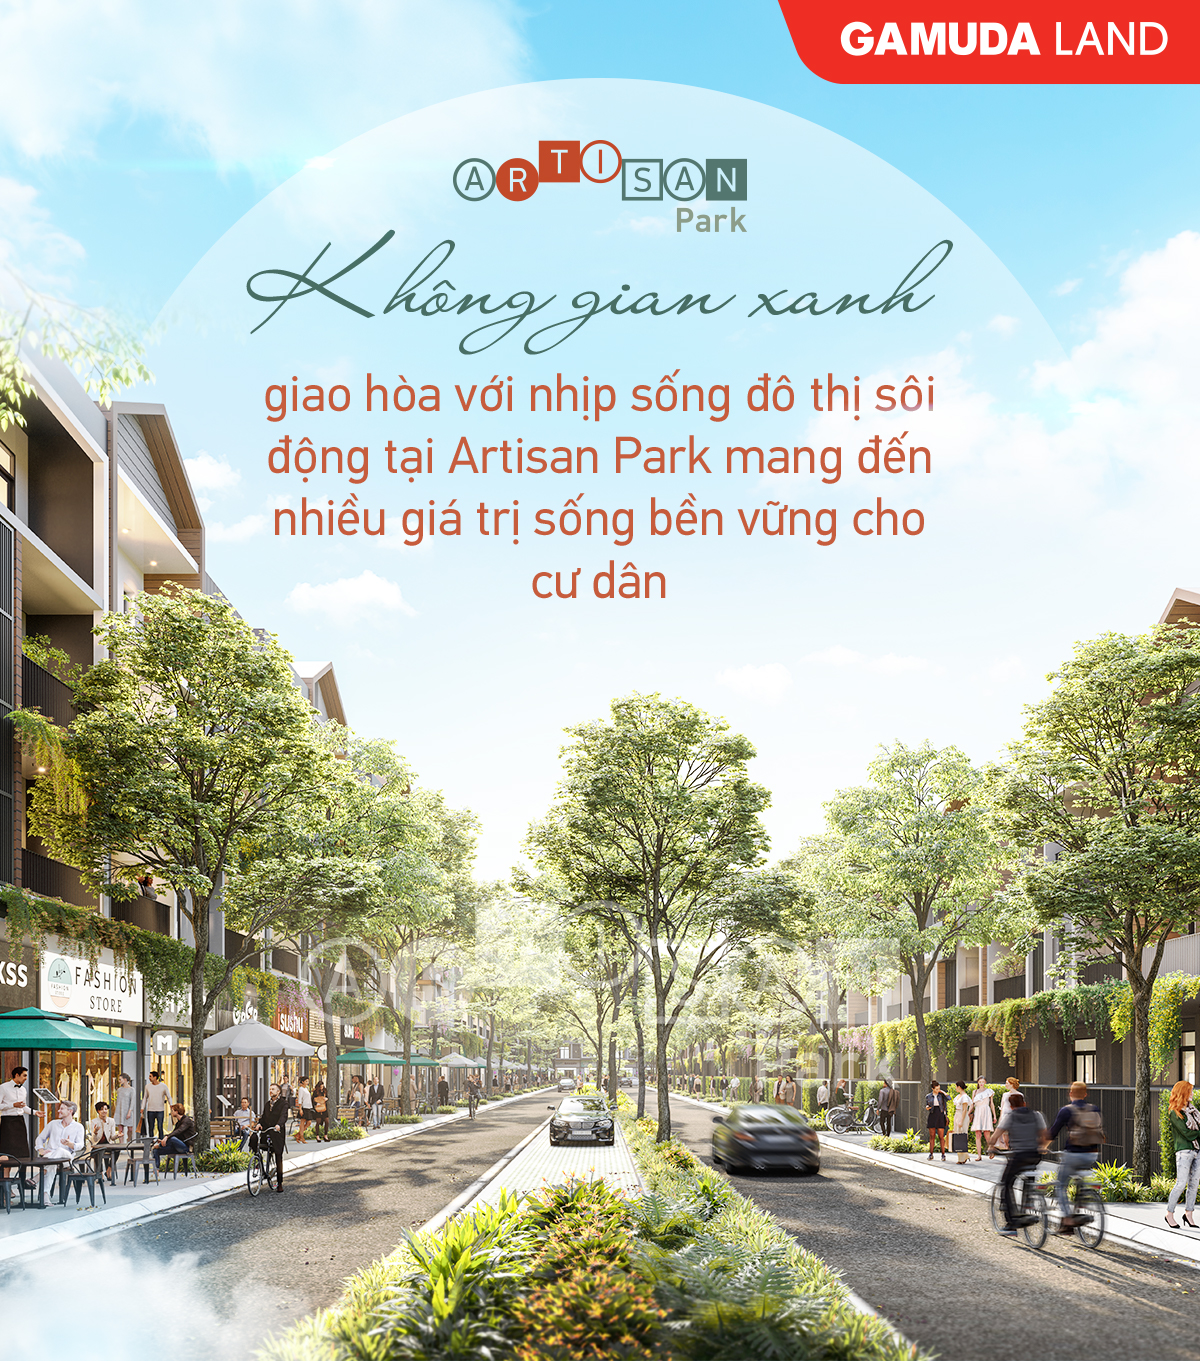 5 yếu tố khiến Artisan Park là dự án đáng đầu tư bậc nhất - Ảnh 6.